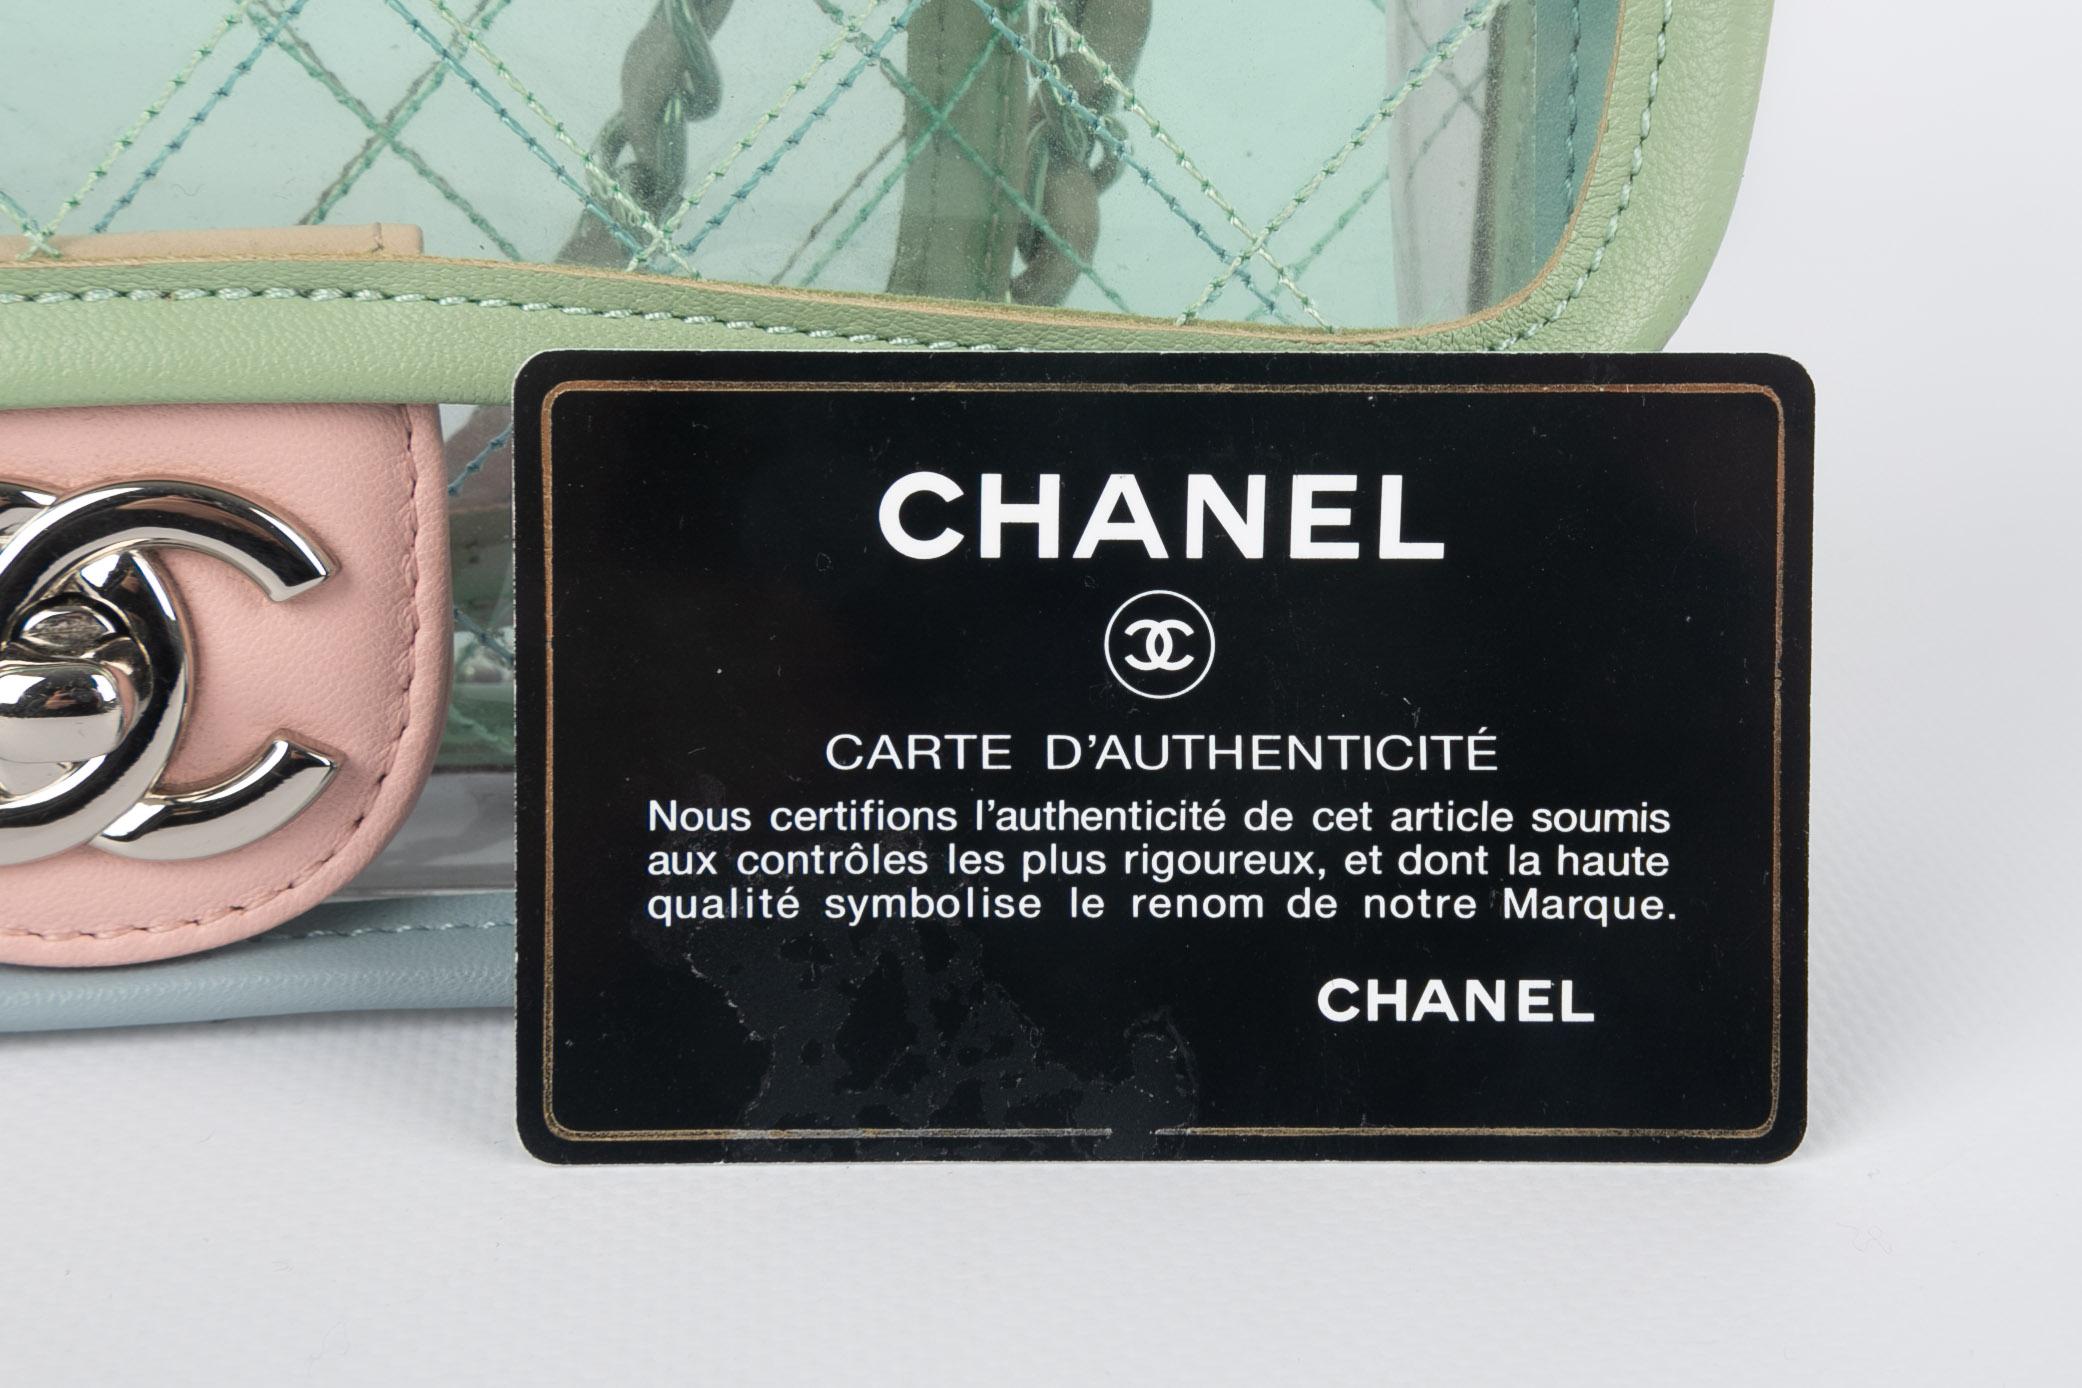 Sac Chanel 2018 5